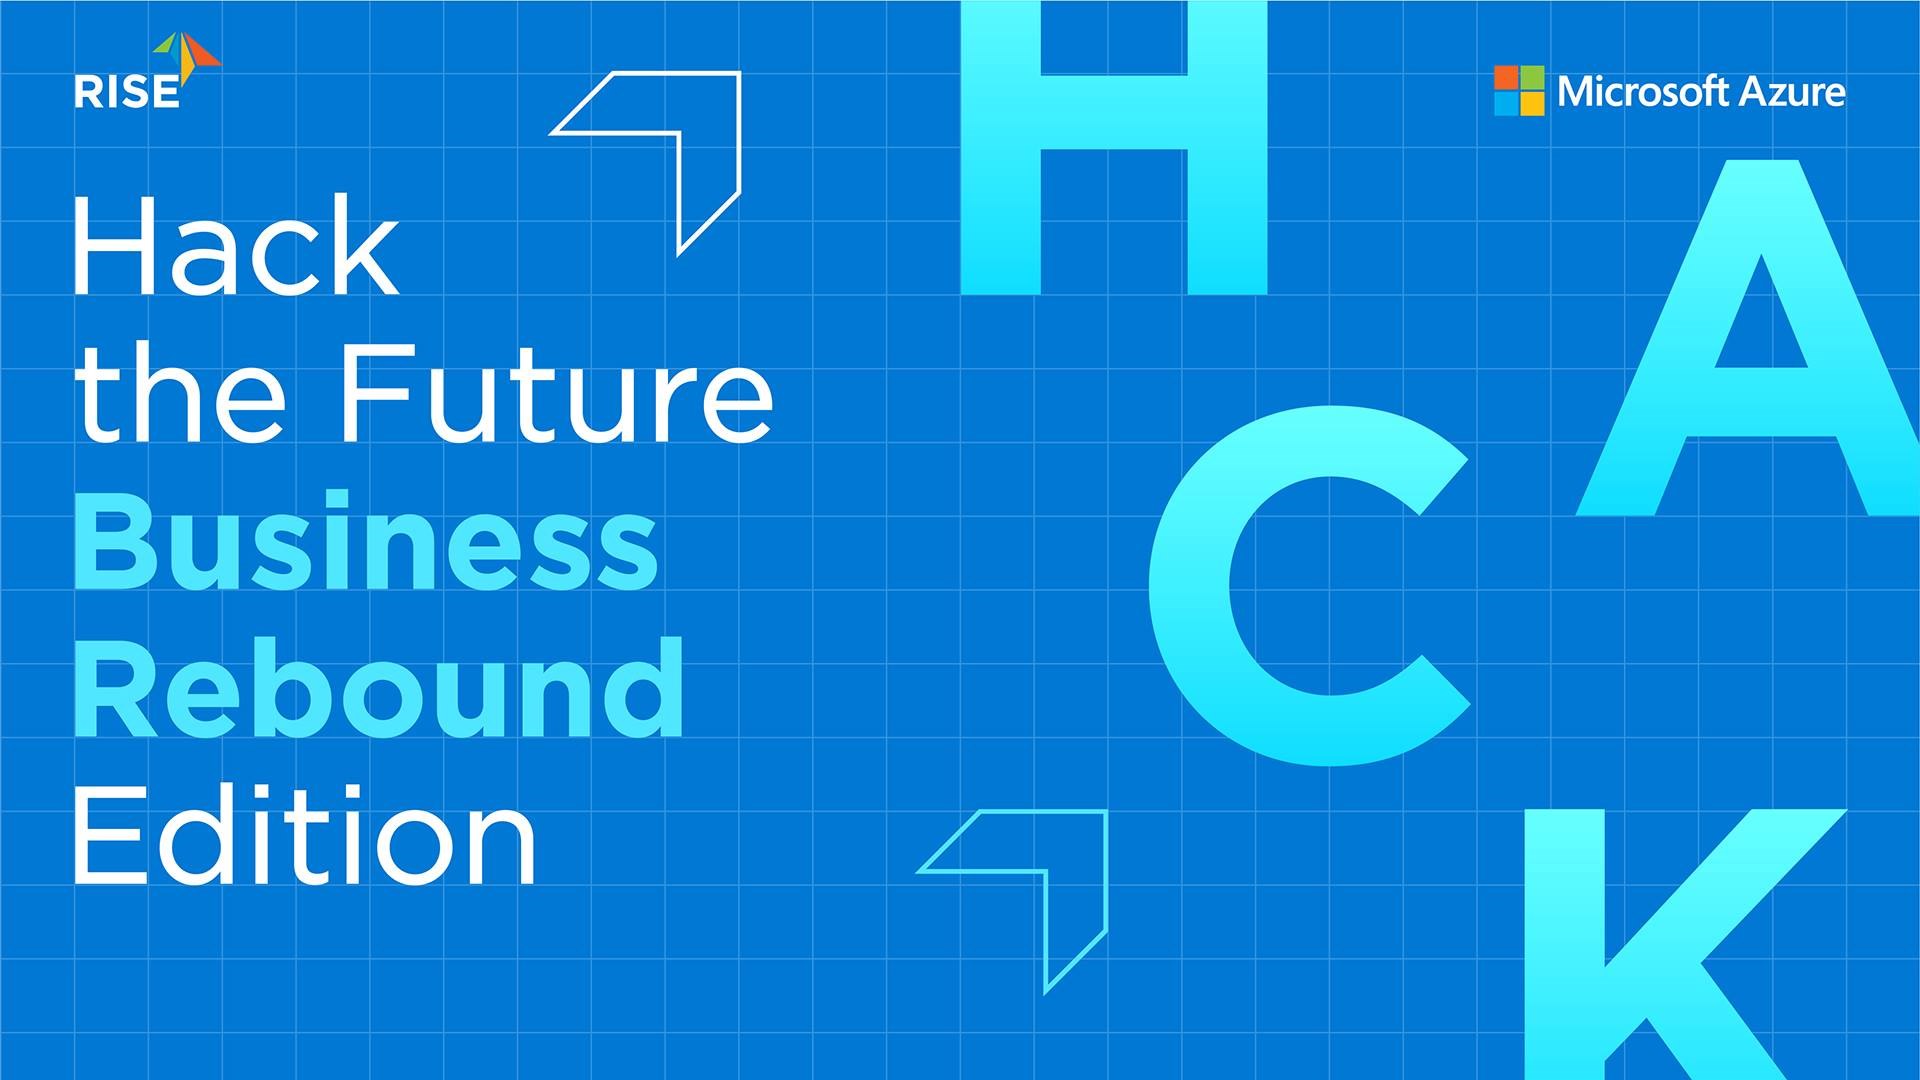 ไมโครซอฟท์จับมือ RISE ผุดโครงการ Hack the Future: Business Rebound Edition เร่งสร้างนวัตกรรมเพื่อ SME ไทย กู้ธุรกิจหลังวิกฤตโควิด-19